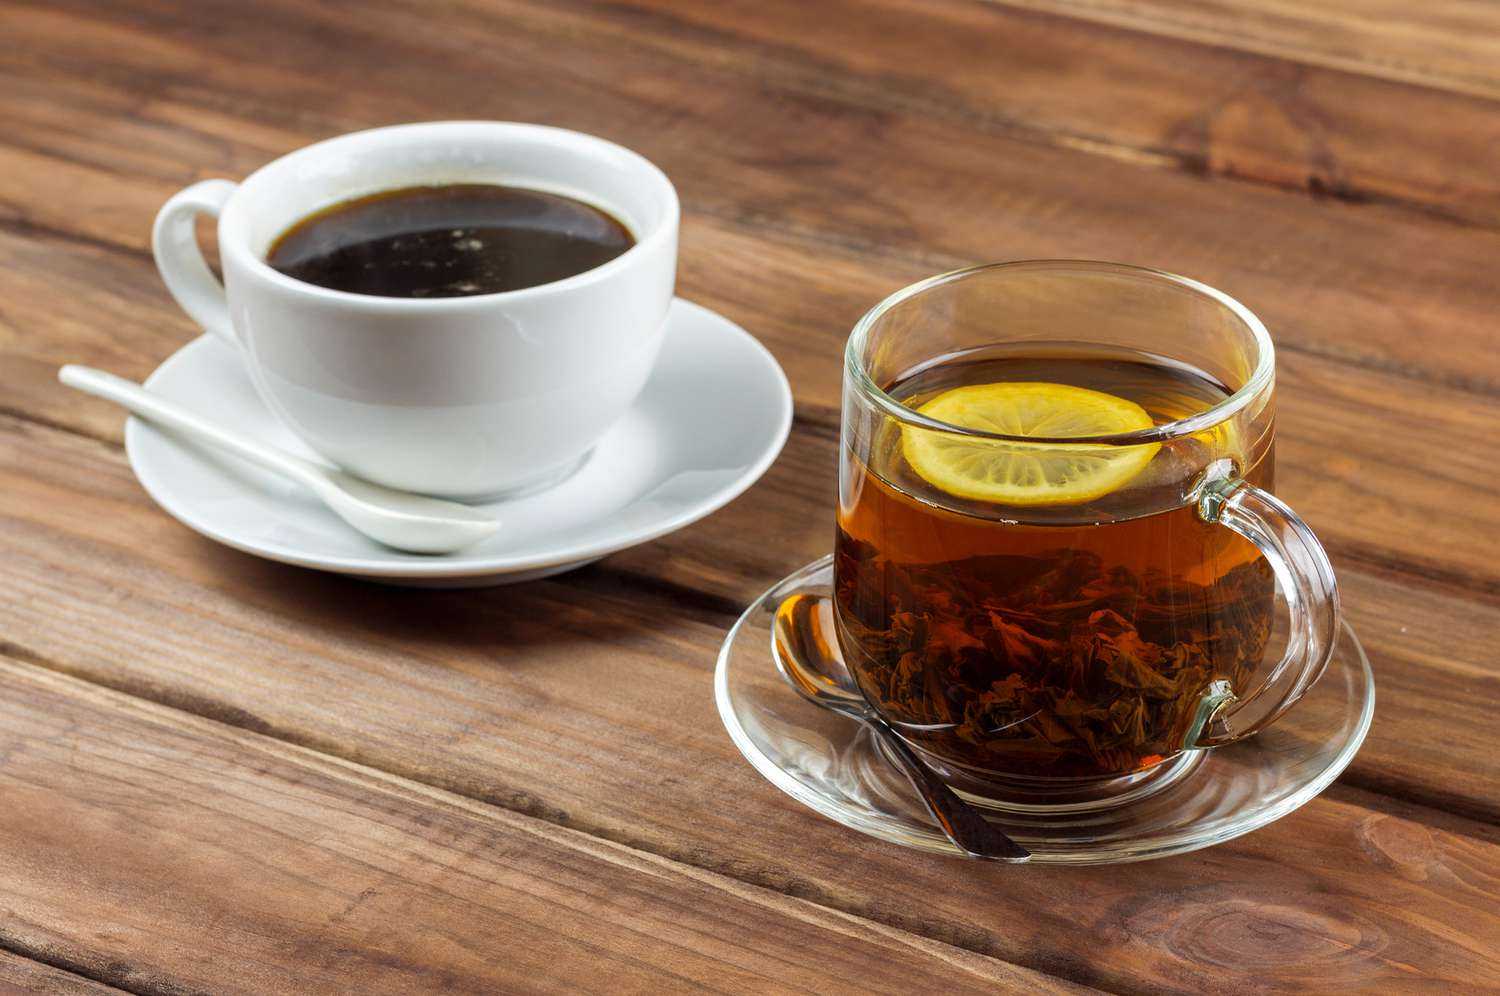 Διατροφή: Τσάι ή καφές έχει τα περισσότερα οφέλη για την υγεία;